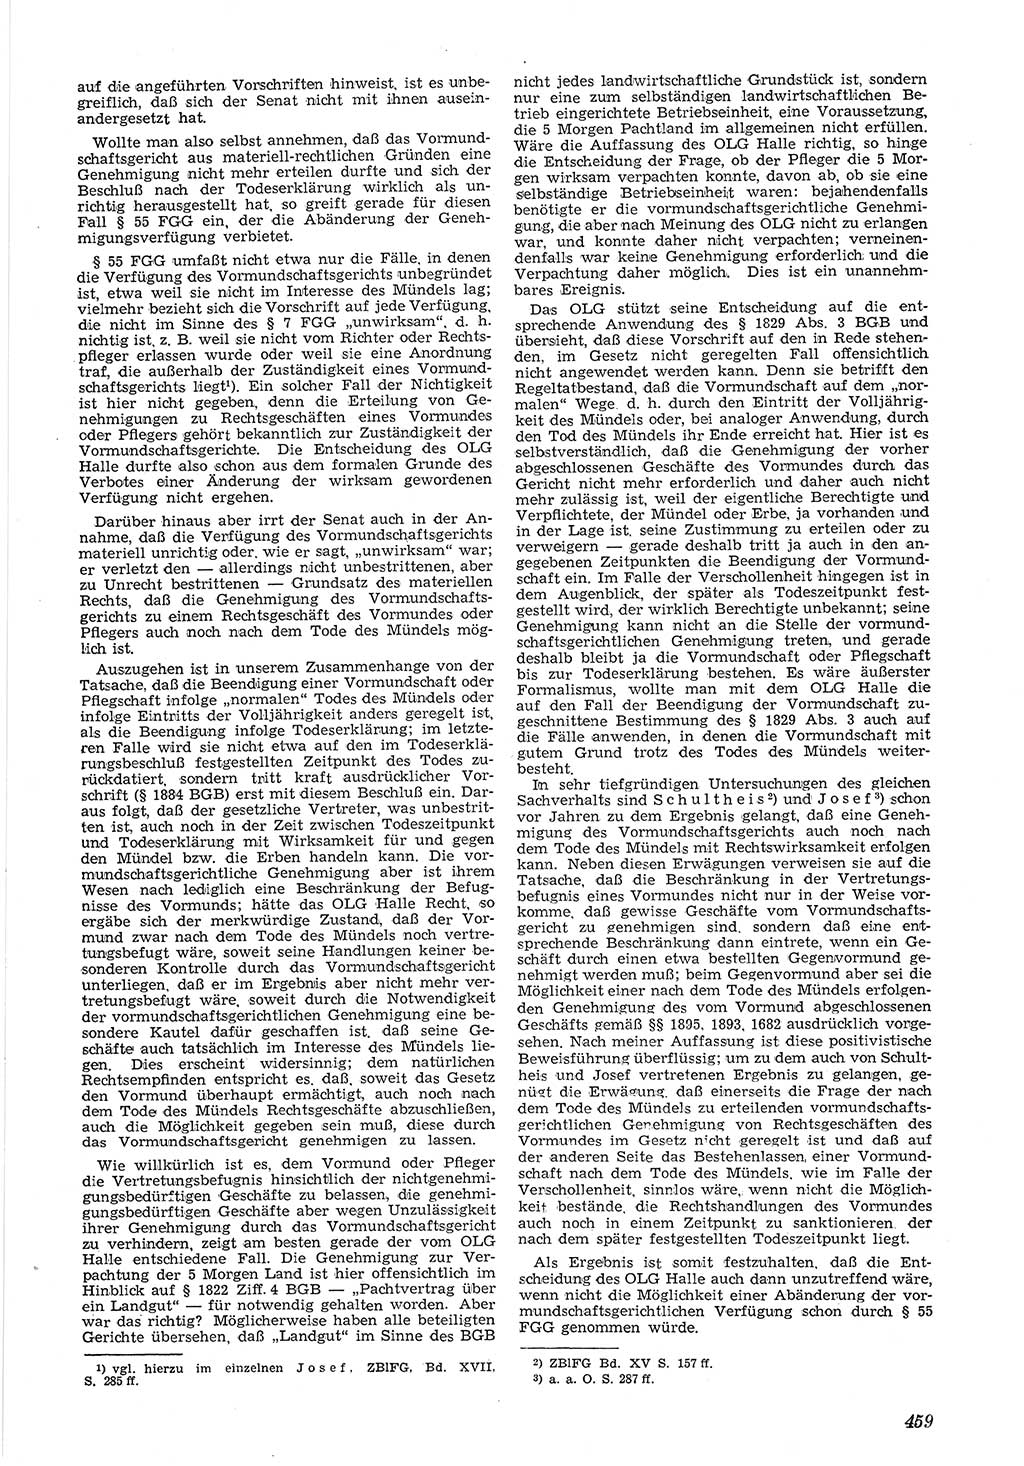 Neue Justiz (NJ), Zeitschrift für Recht und Rechtswissenschaft [Deutsche Demokratische Republik (DDR)], 5. Jahrgang 1951, Seite 459 (NJ DDR 1951, S. 459)